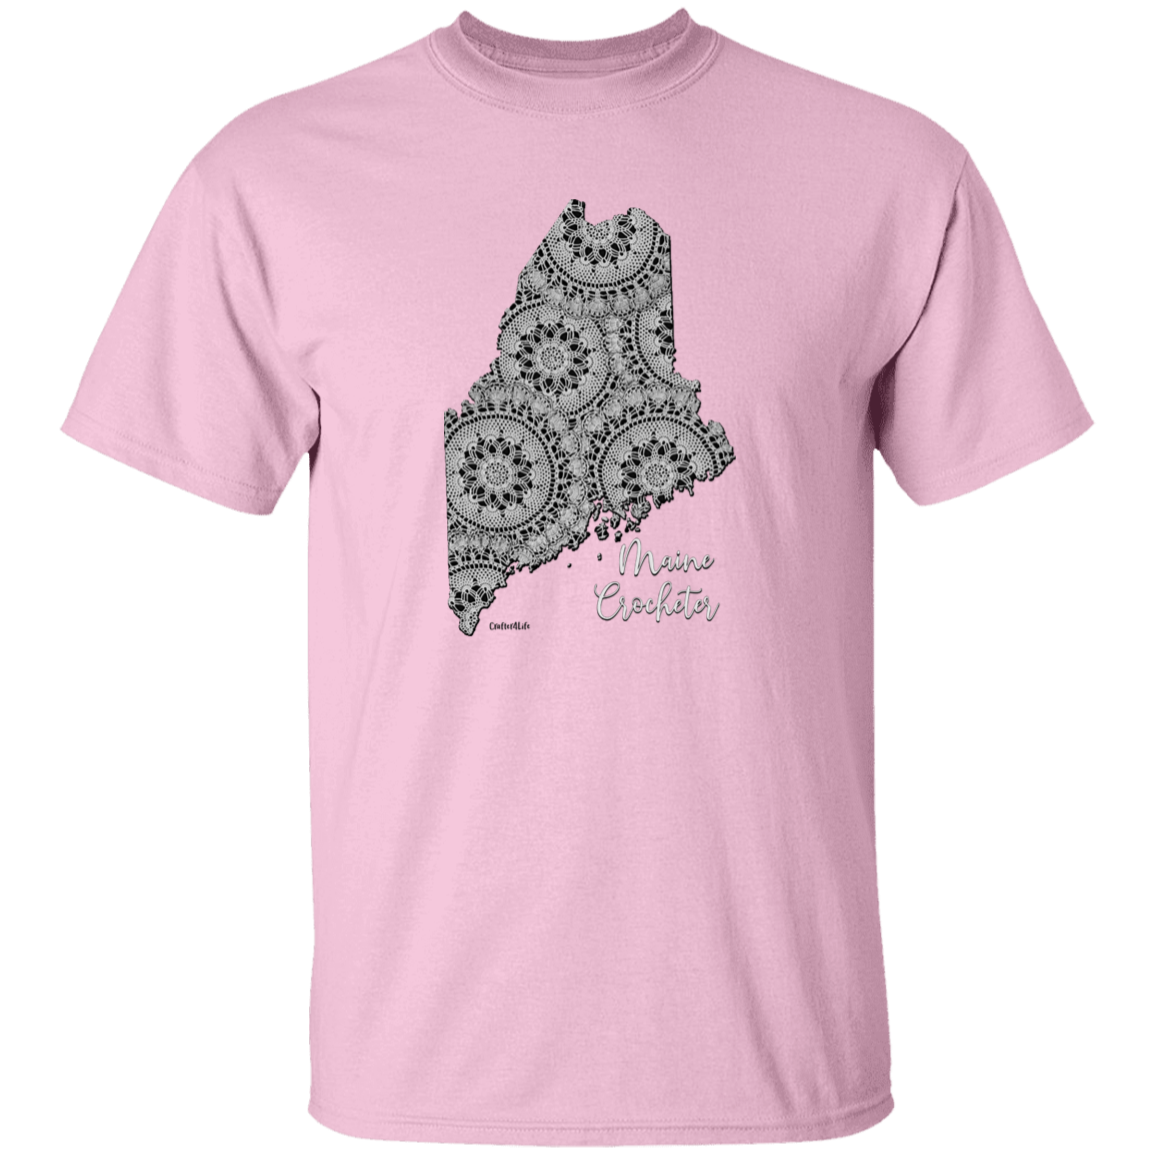 Maine Crocheter T-Shirt